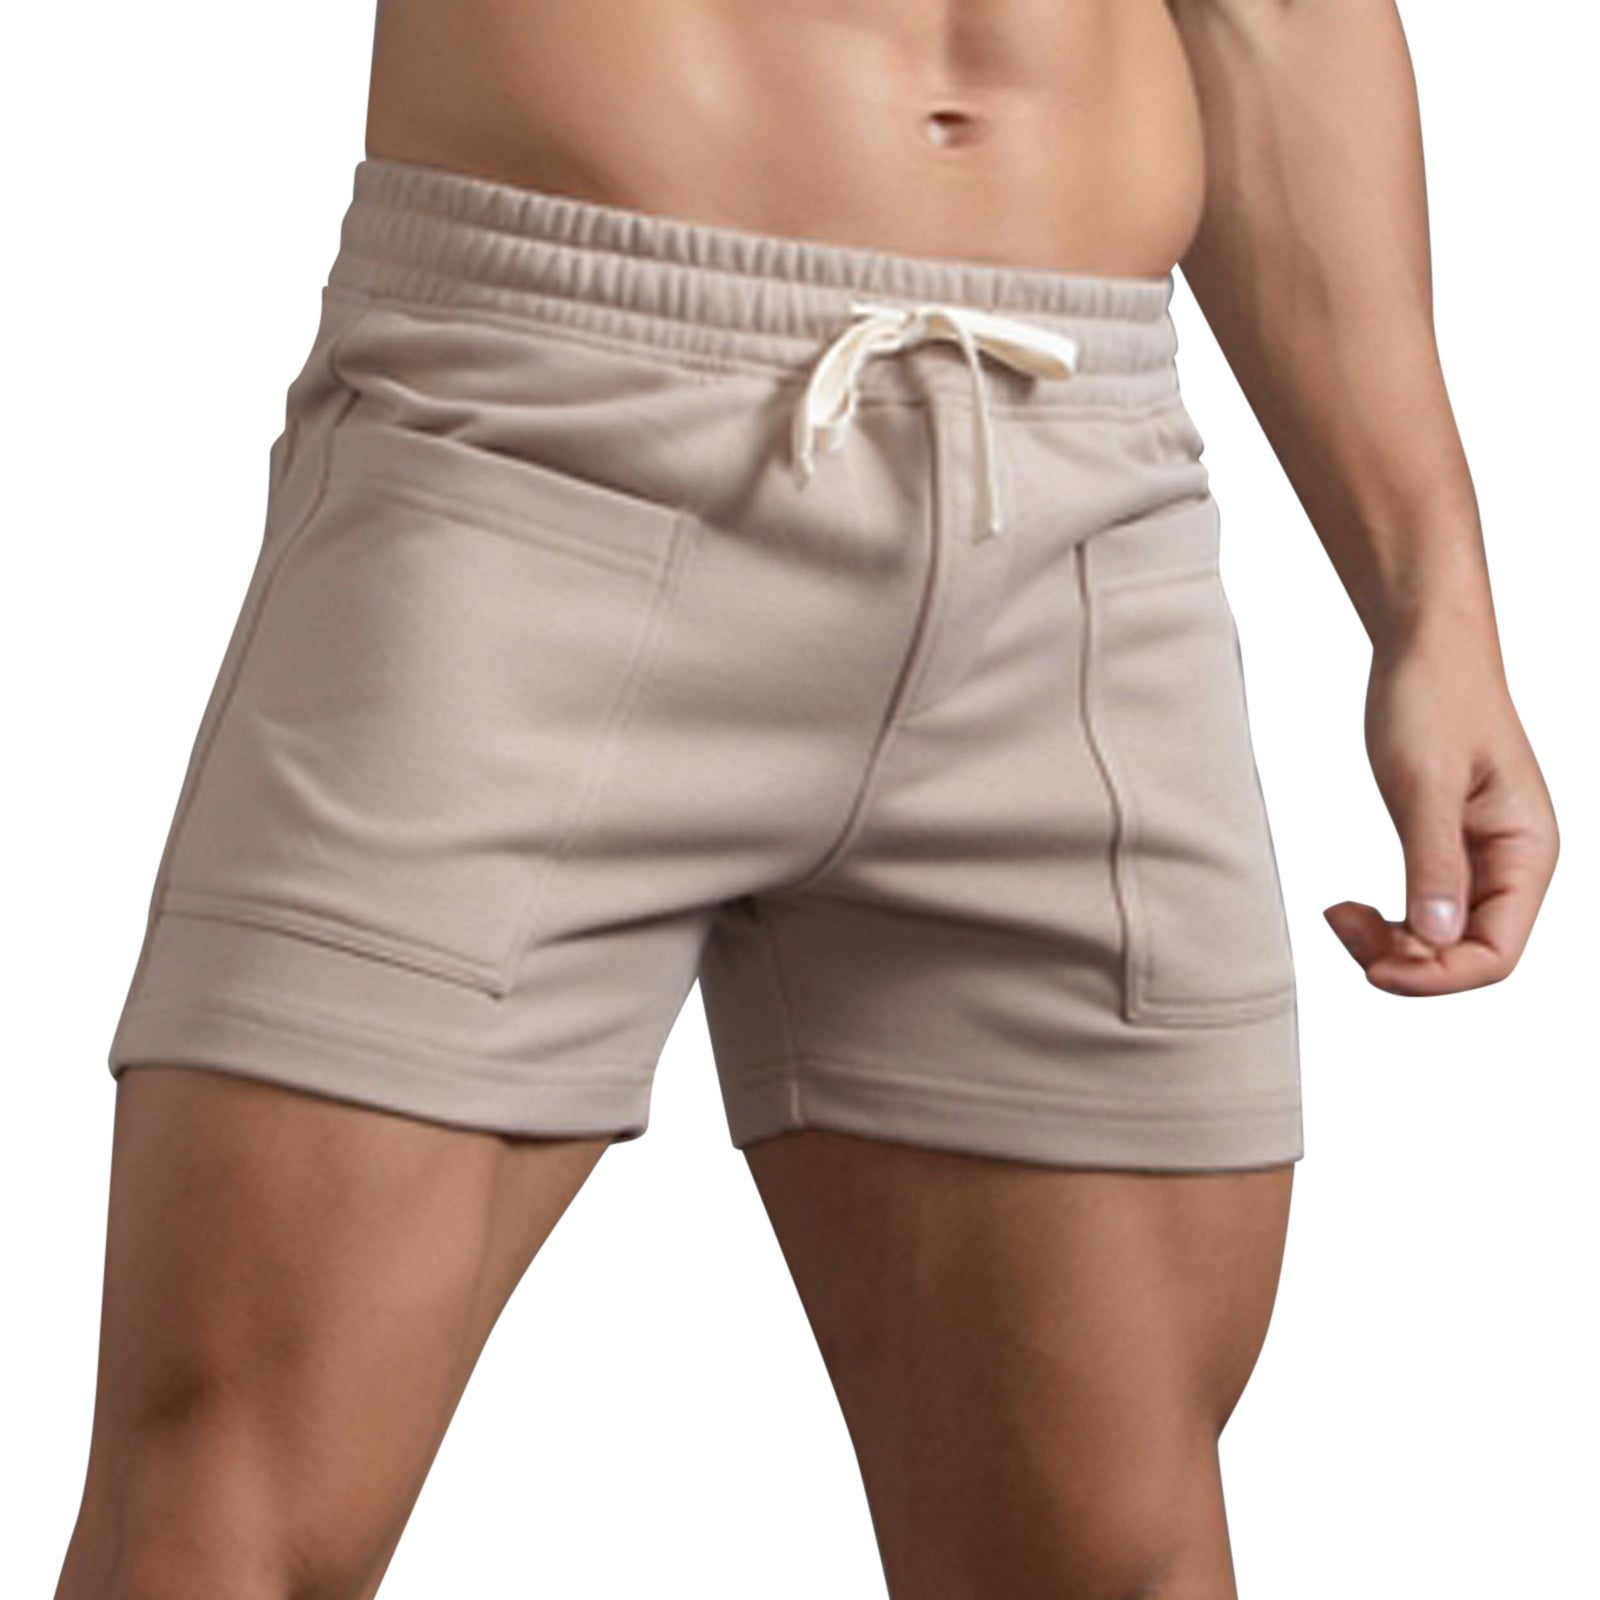 Slim fit shorts for men